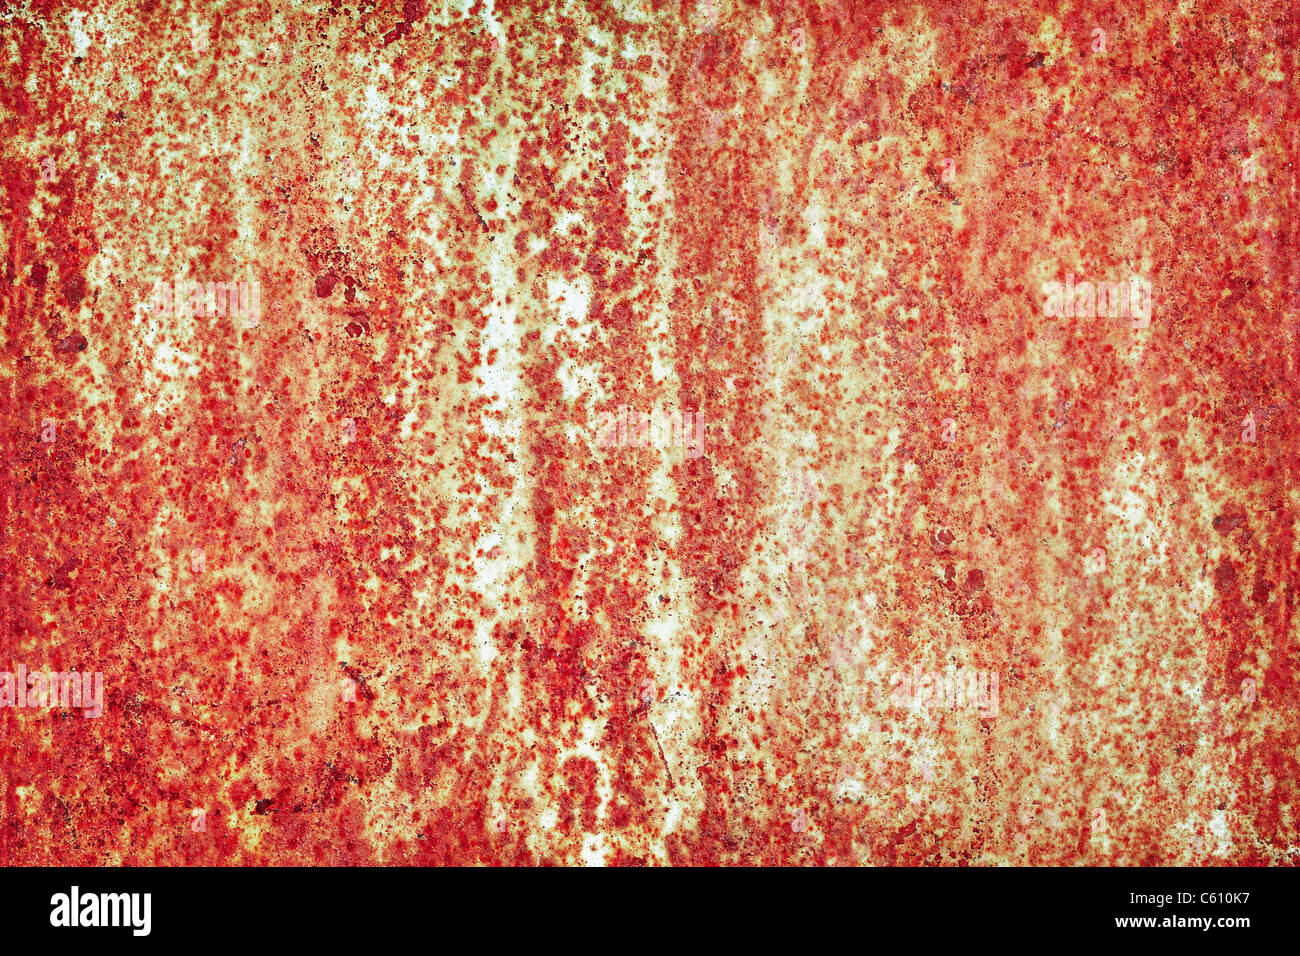 La superficie de la hoja de acero oxidado - grunge textura industrial Foto de stock